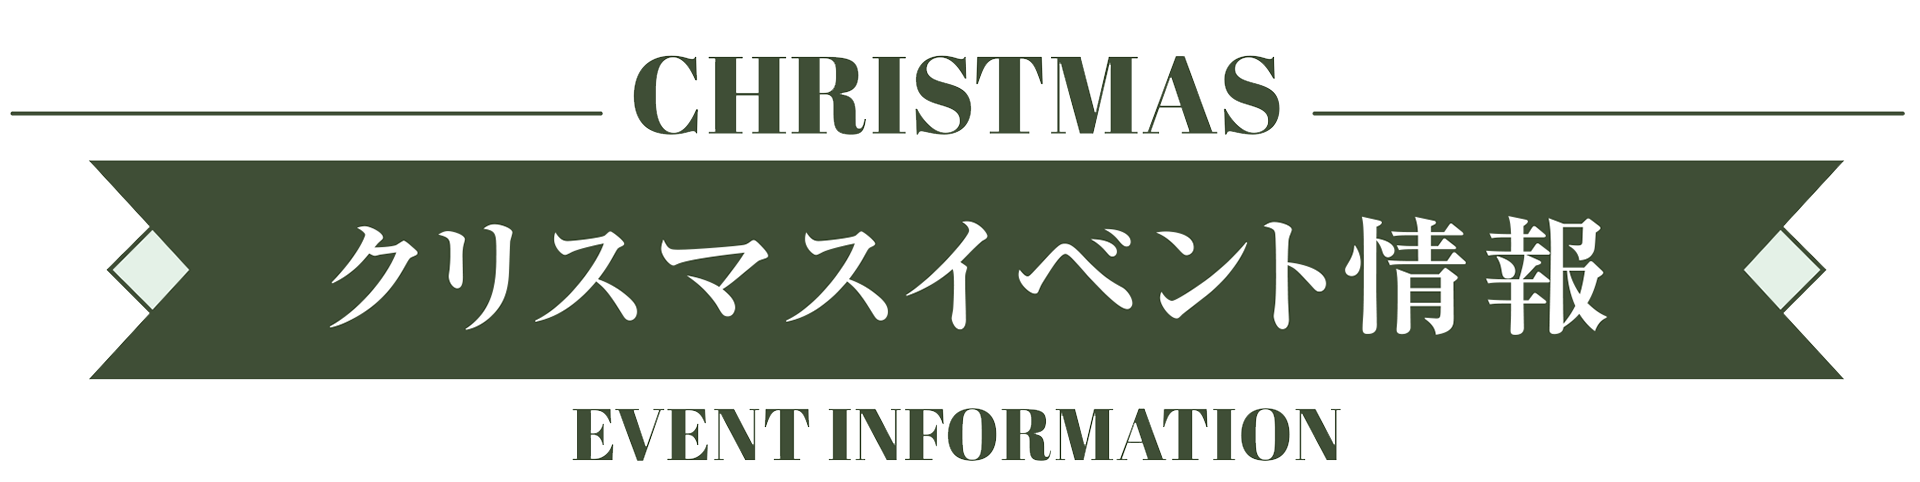 クリスマスイベント情報